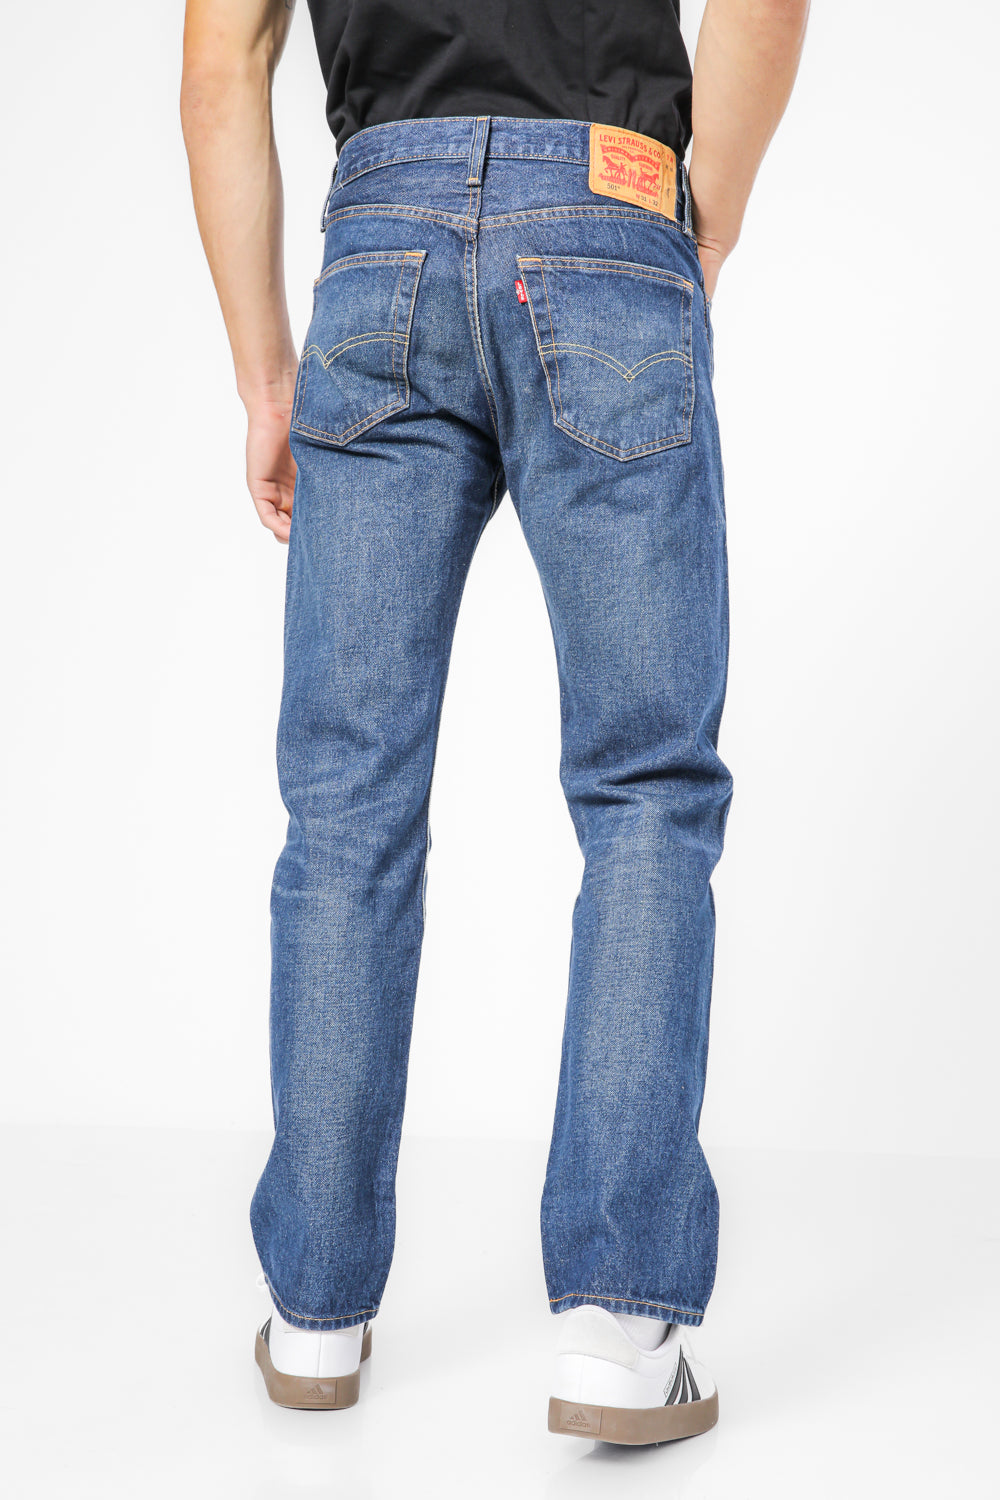 ג'ינס 501 בצבע כחול